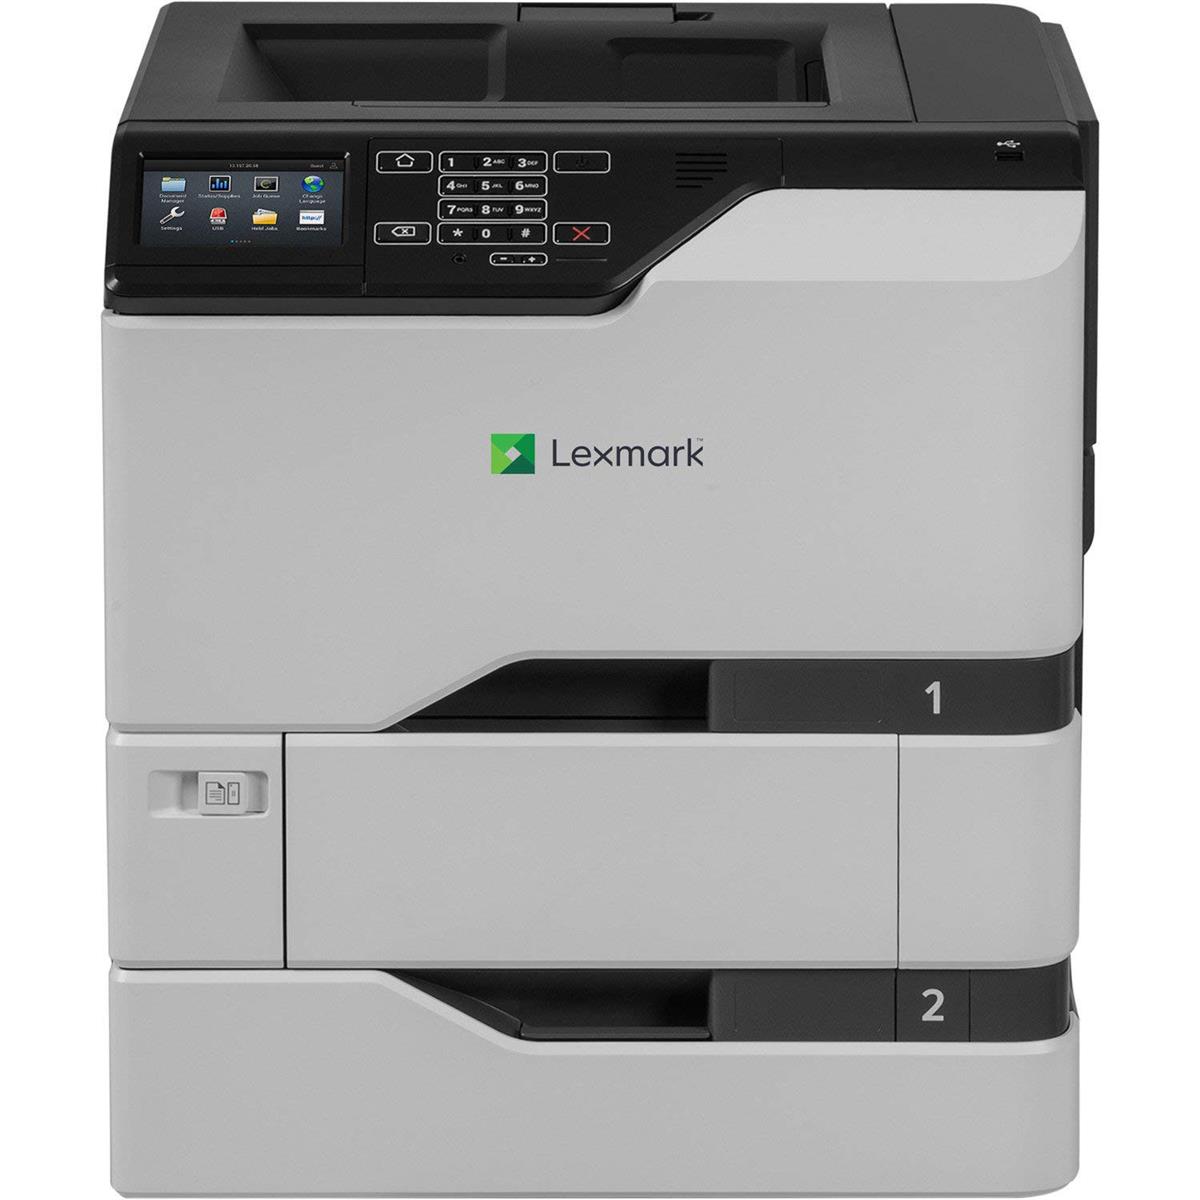 Image of Lexmark CS720dte Color Laser Printer